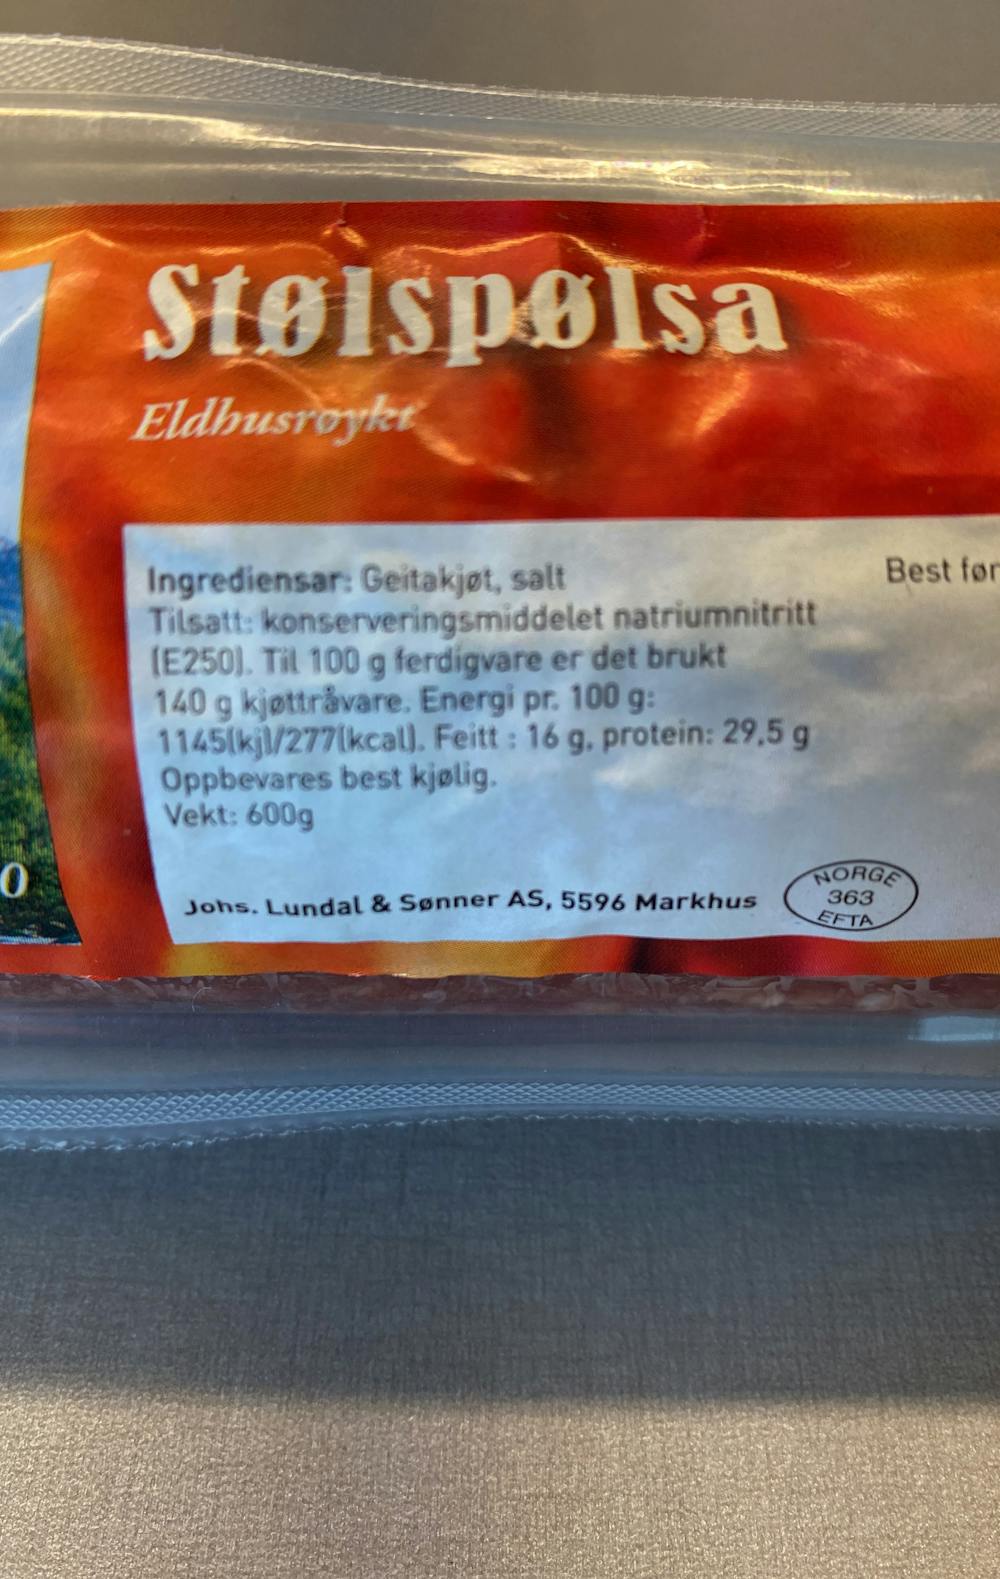 Ingredienslisten til Lundal Stølspølsa